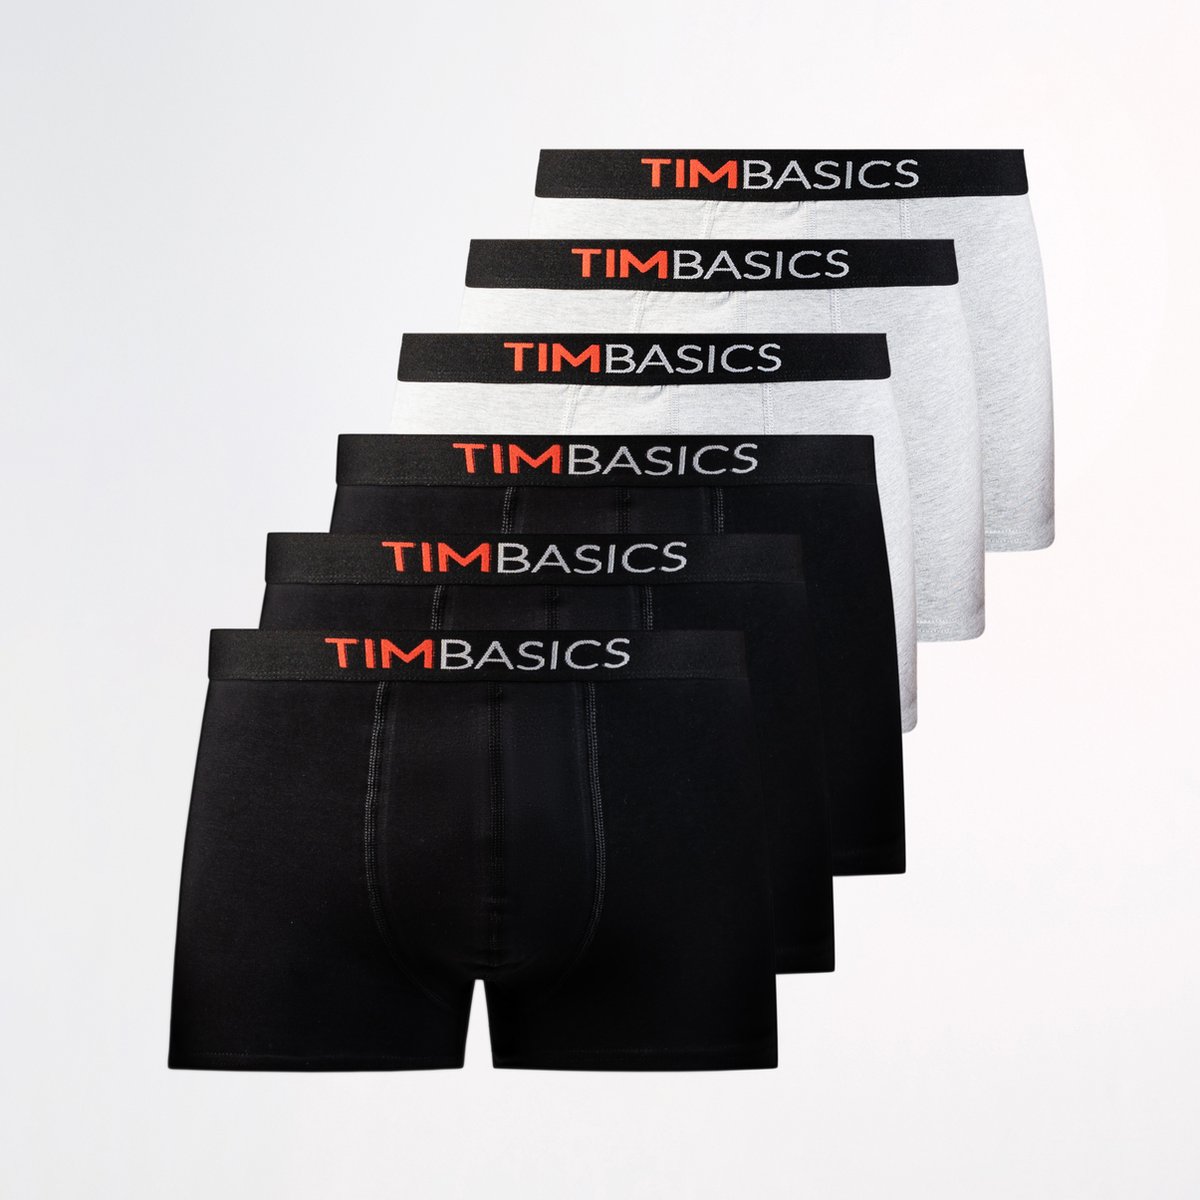 TimBasics - Heren boxershorts 6 pack - Zwart & Grijs – Maat L - Heren ondergoed